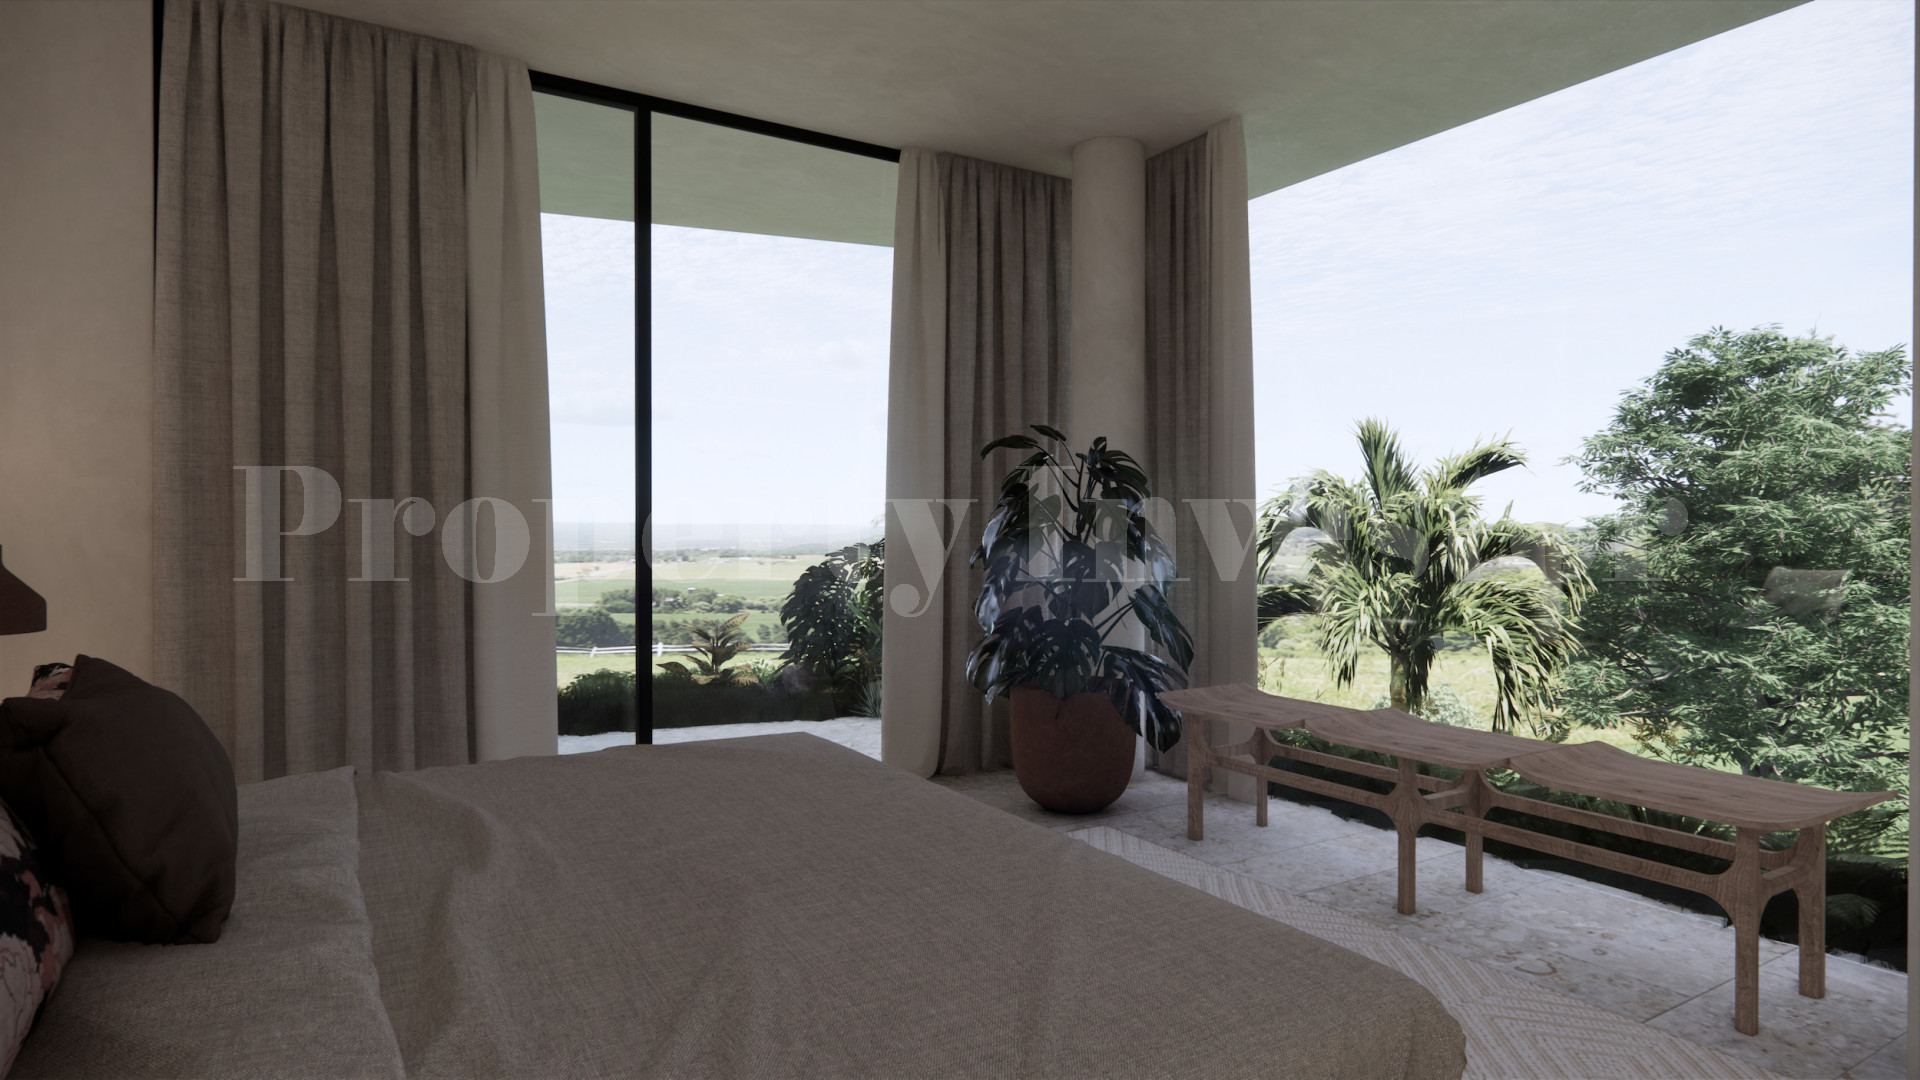 Modern Off-Plan 3 Bedroom Luxury Oceanview Villas for Sale in Uluwatu, Bali from $395,000